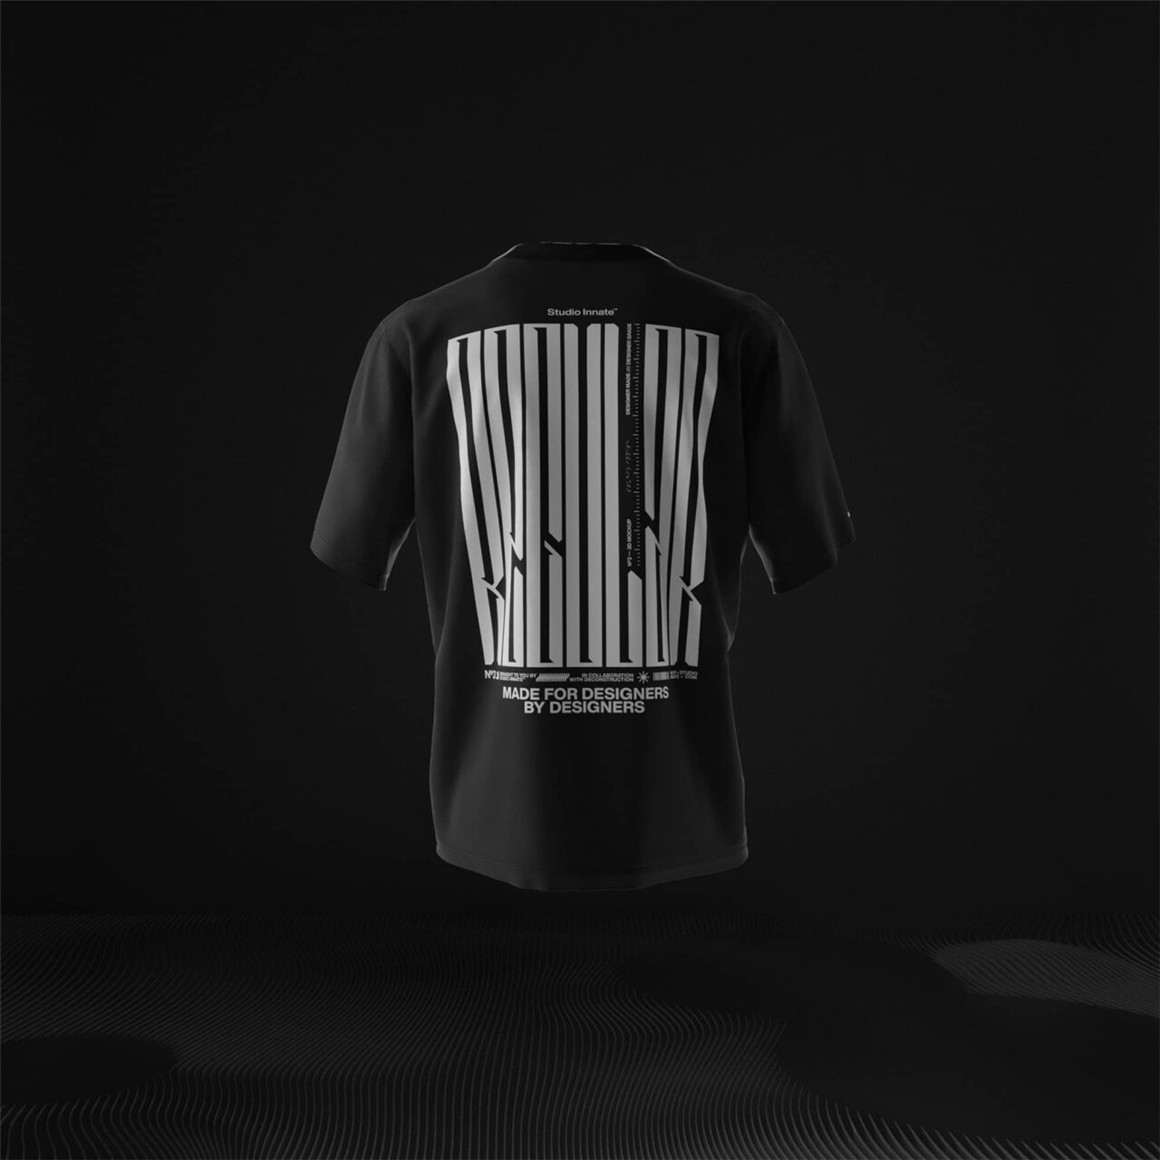 Blender模型：新潮概念视觉3DT恤服装场景街头服饰品牌宣传模型 设计素材 第8张